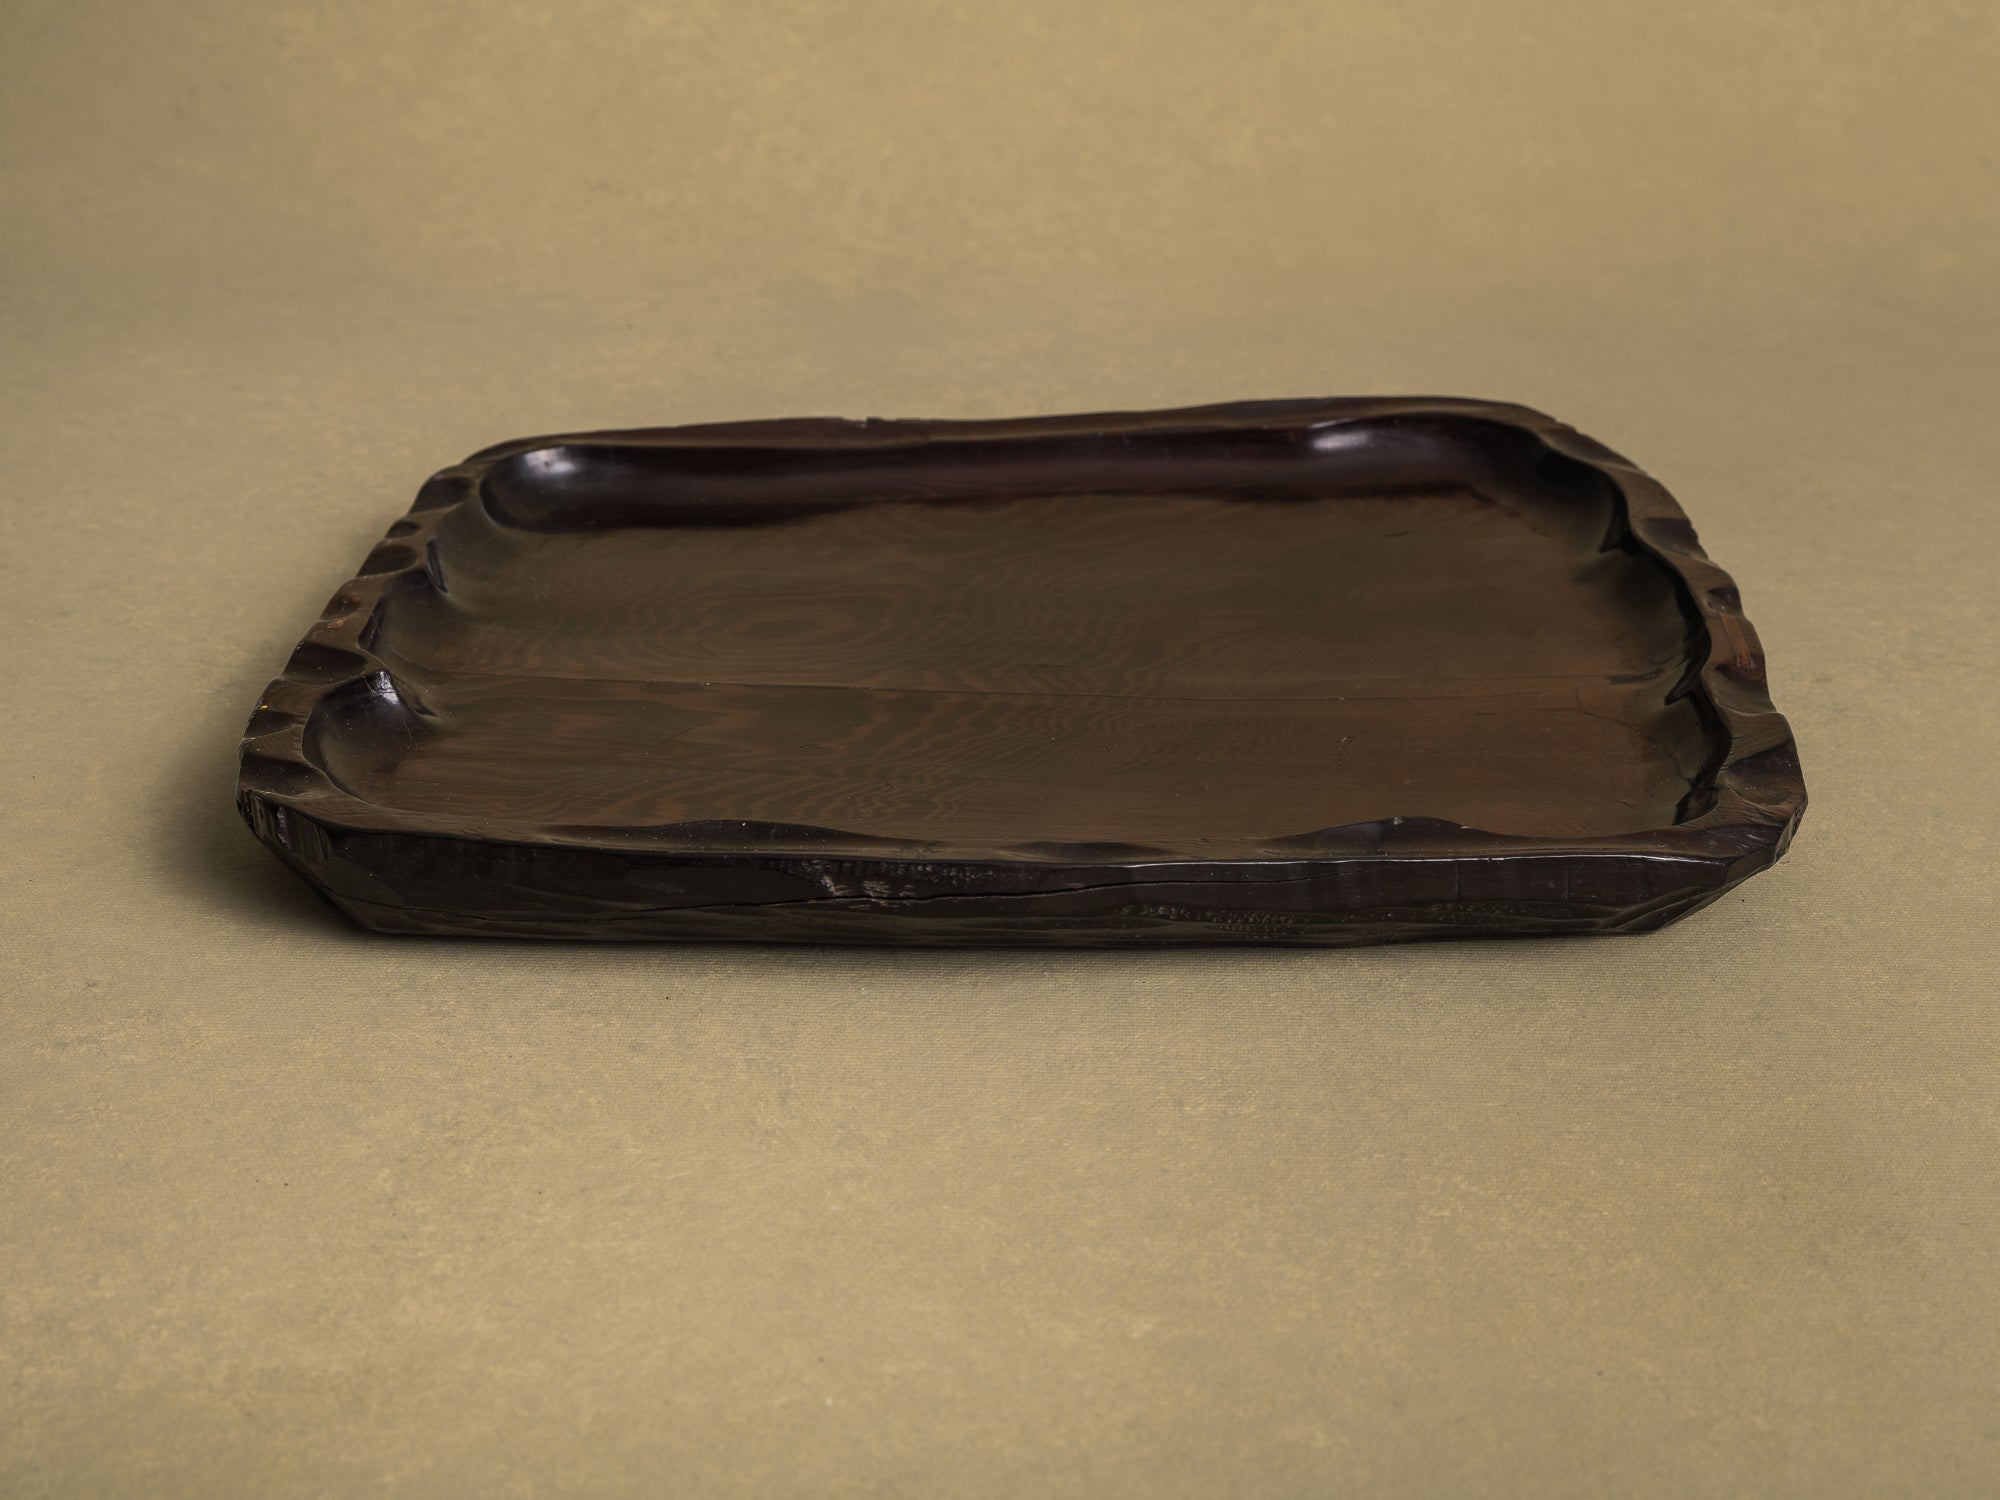 Coupe monoxyle / plateau à thé pour la cérémonie du thé, Japon (vers 1850-80)..Bowl / Mingei tea tray for senchabon tea ceremony, Japan (circa 1850-80)